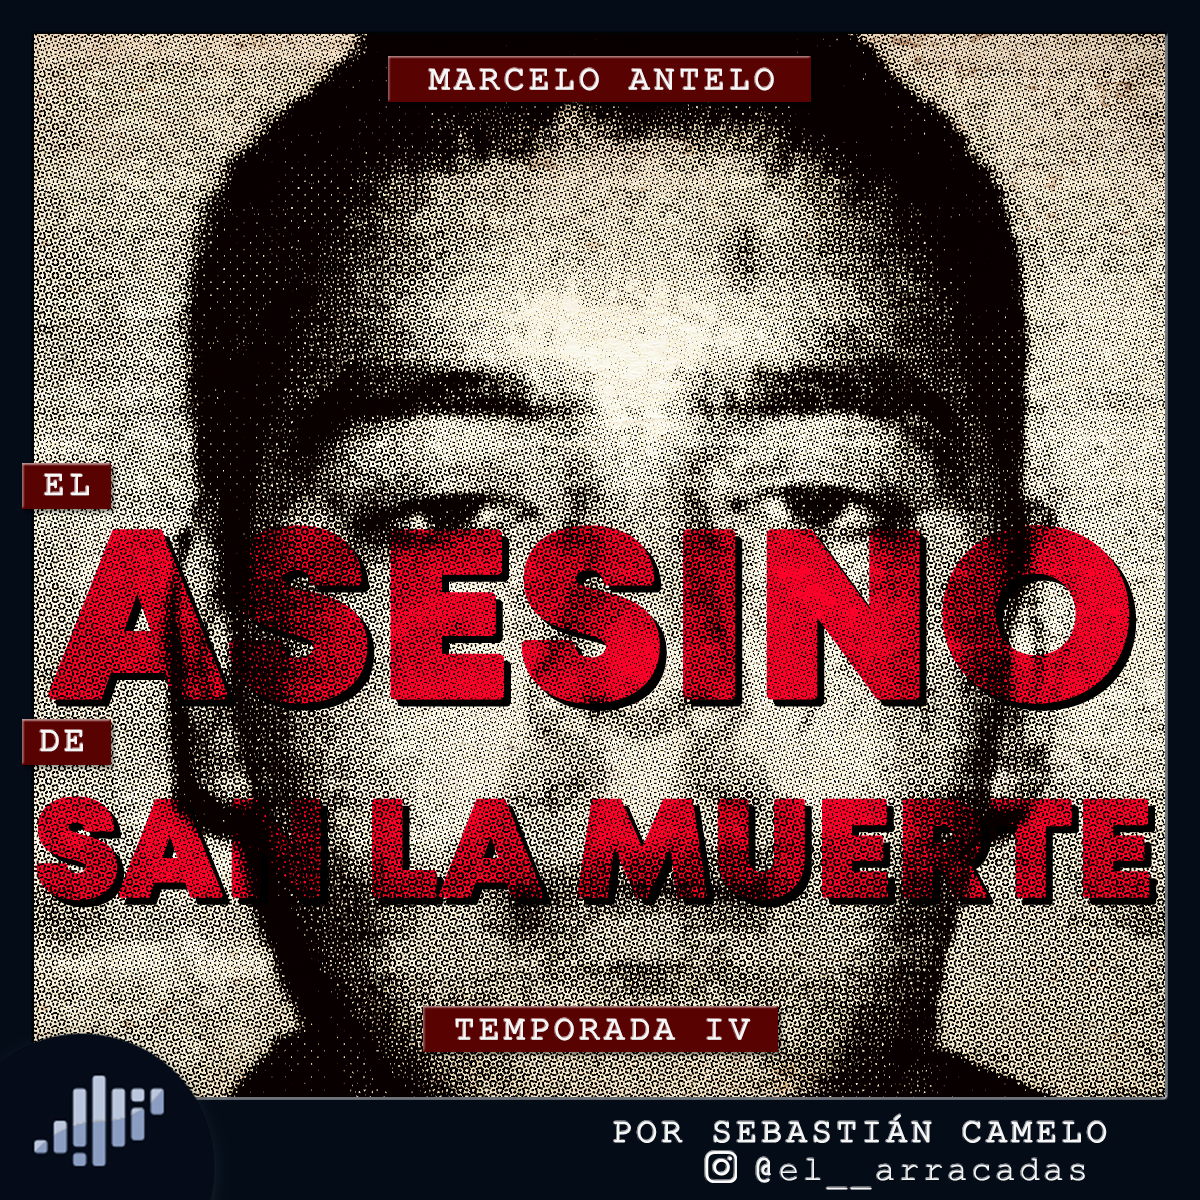 Serialmente: Marcelo Antelo | El Asesino de San La Muerte